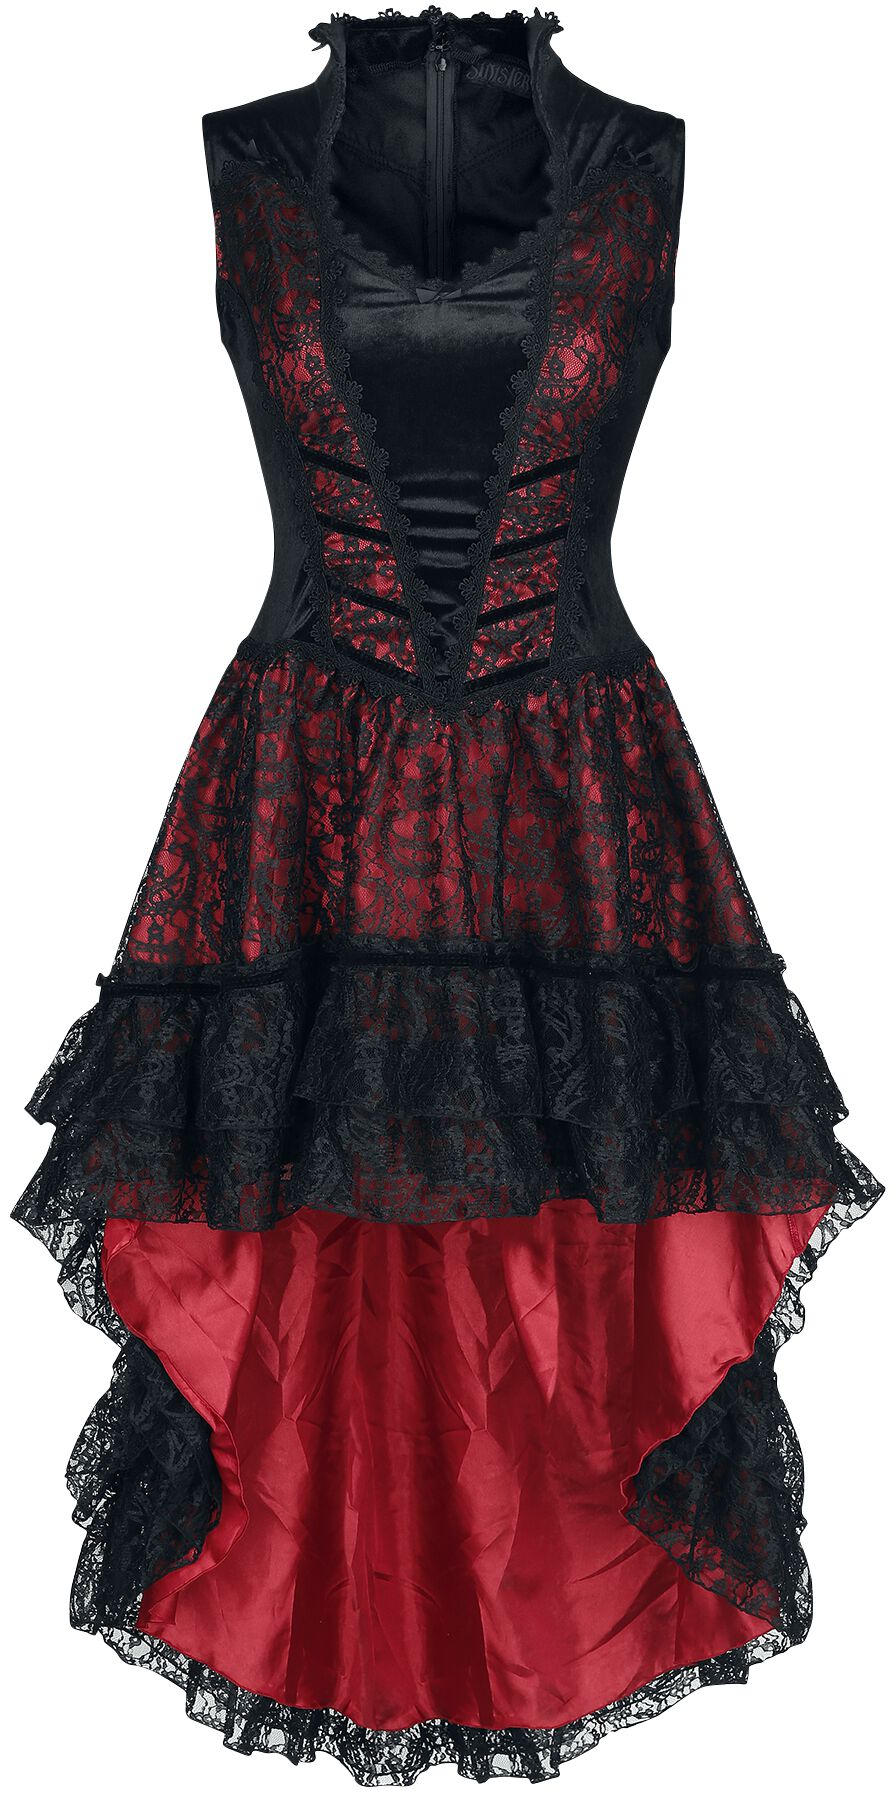 Sinister Gothic - Mittelalter Kleid knielang - Gothic Dress - XS bis 4XL - für Damen - Größe L - schwarz/rot